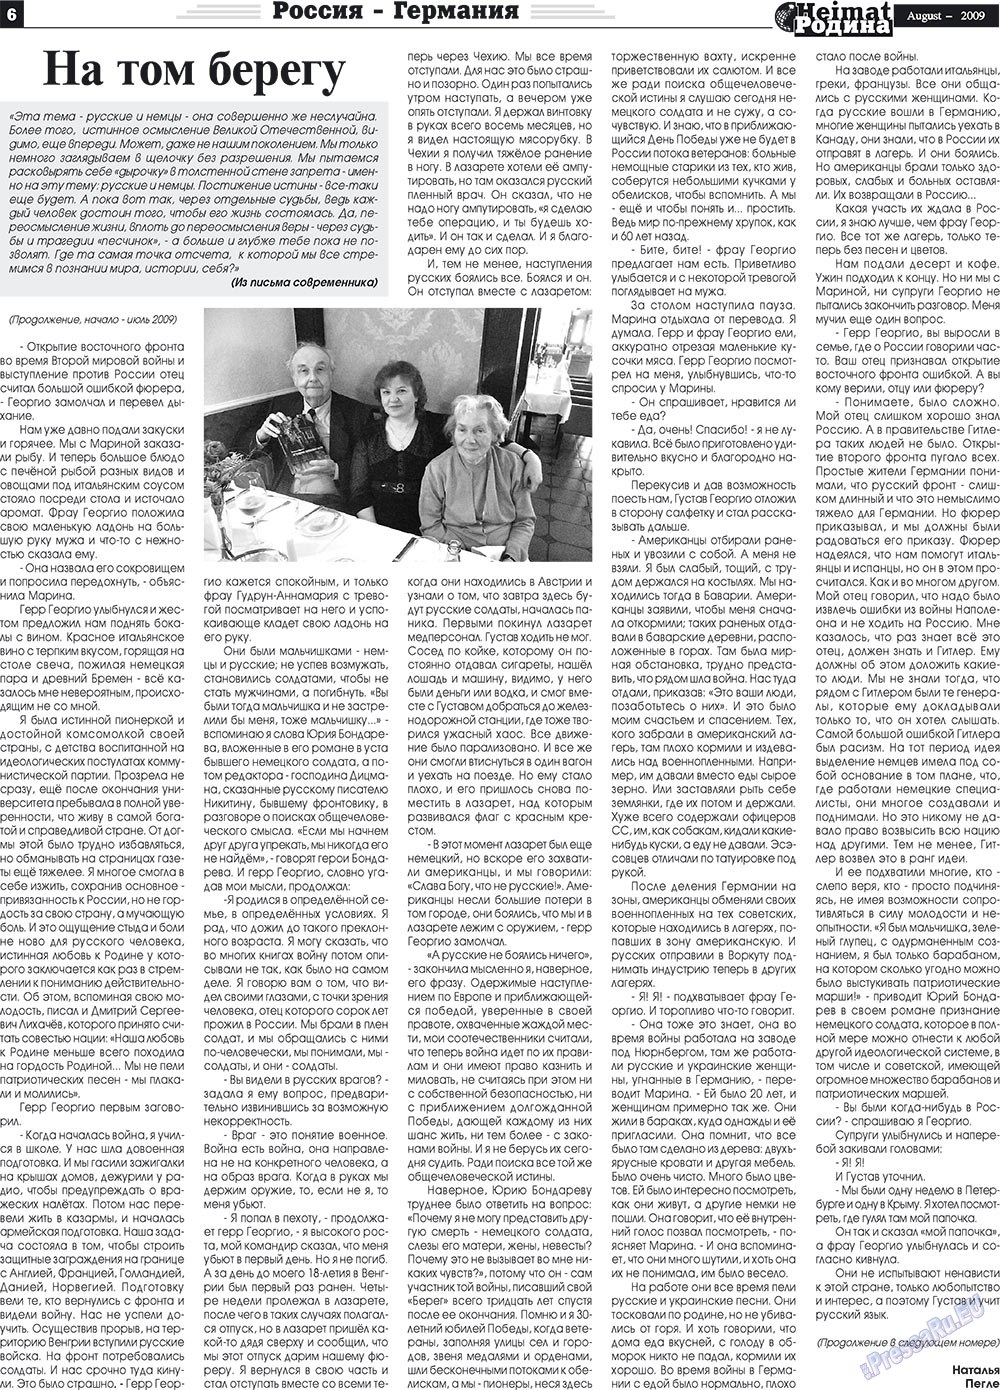 Heimat-Родина (газета). 2009 год, номер 8, стр. 6